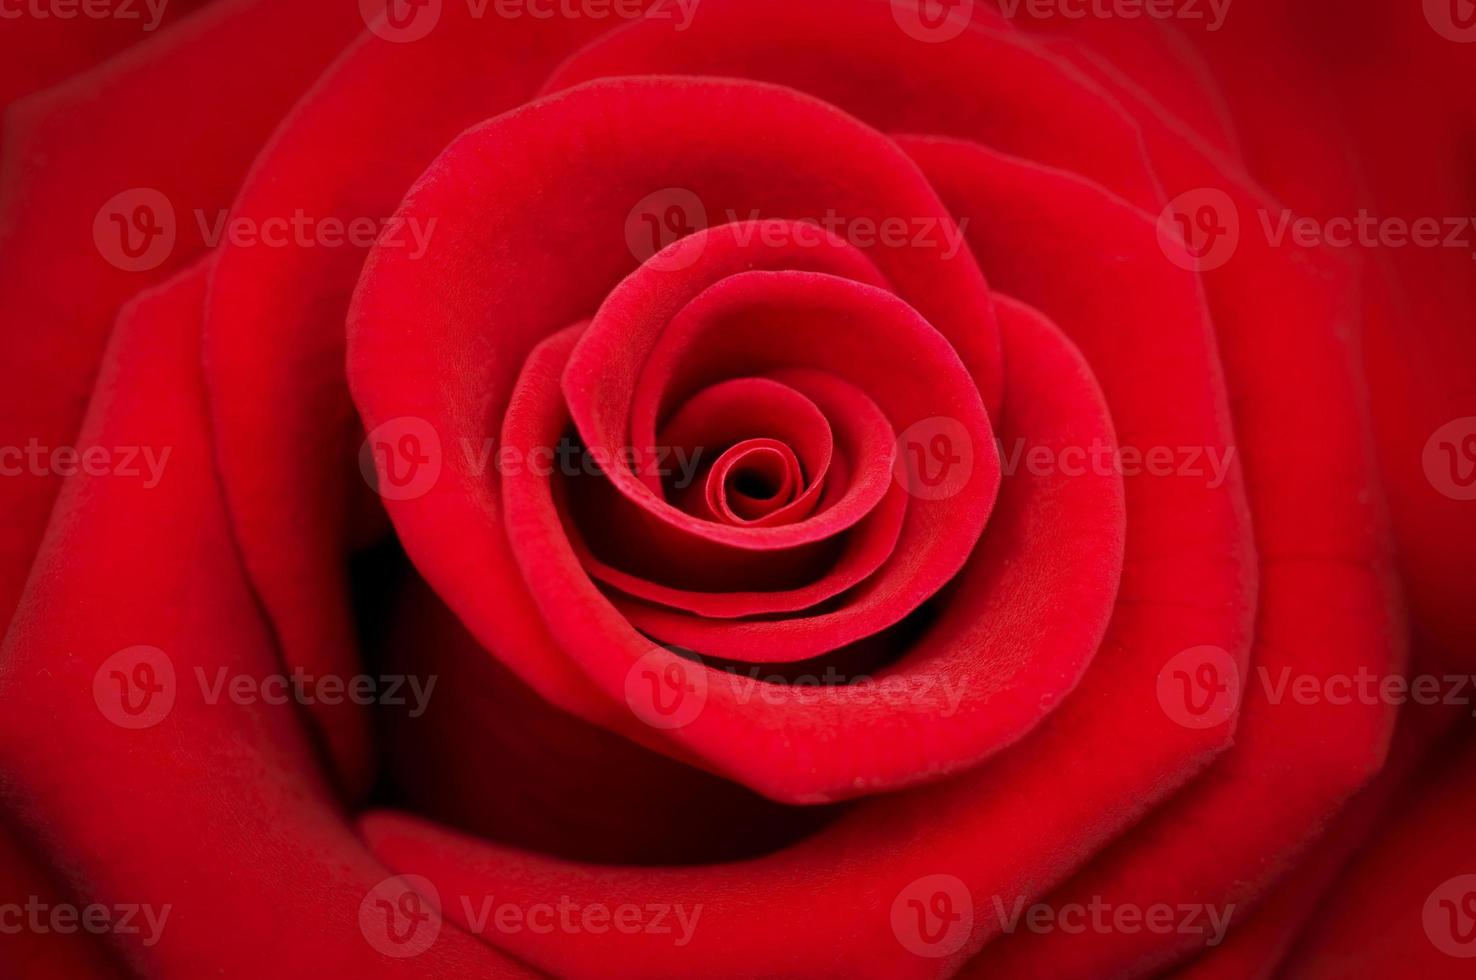 rosa vermelha em fundo vermelho foto